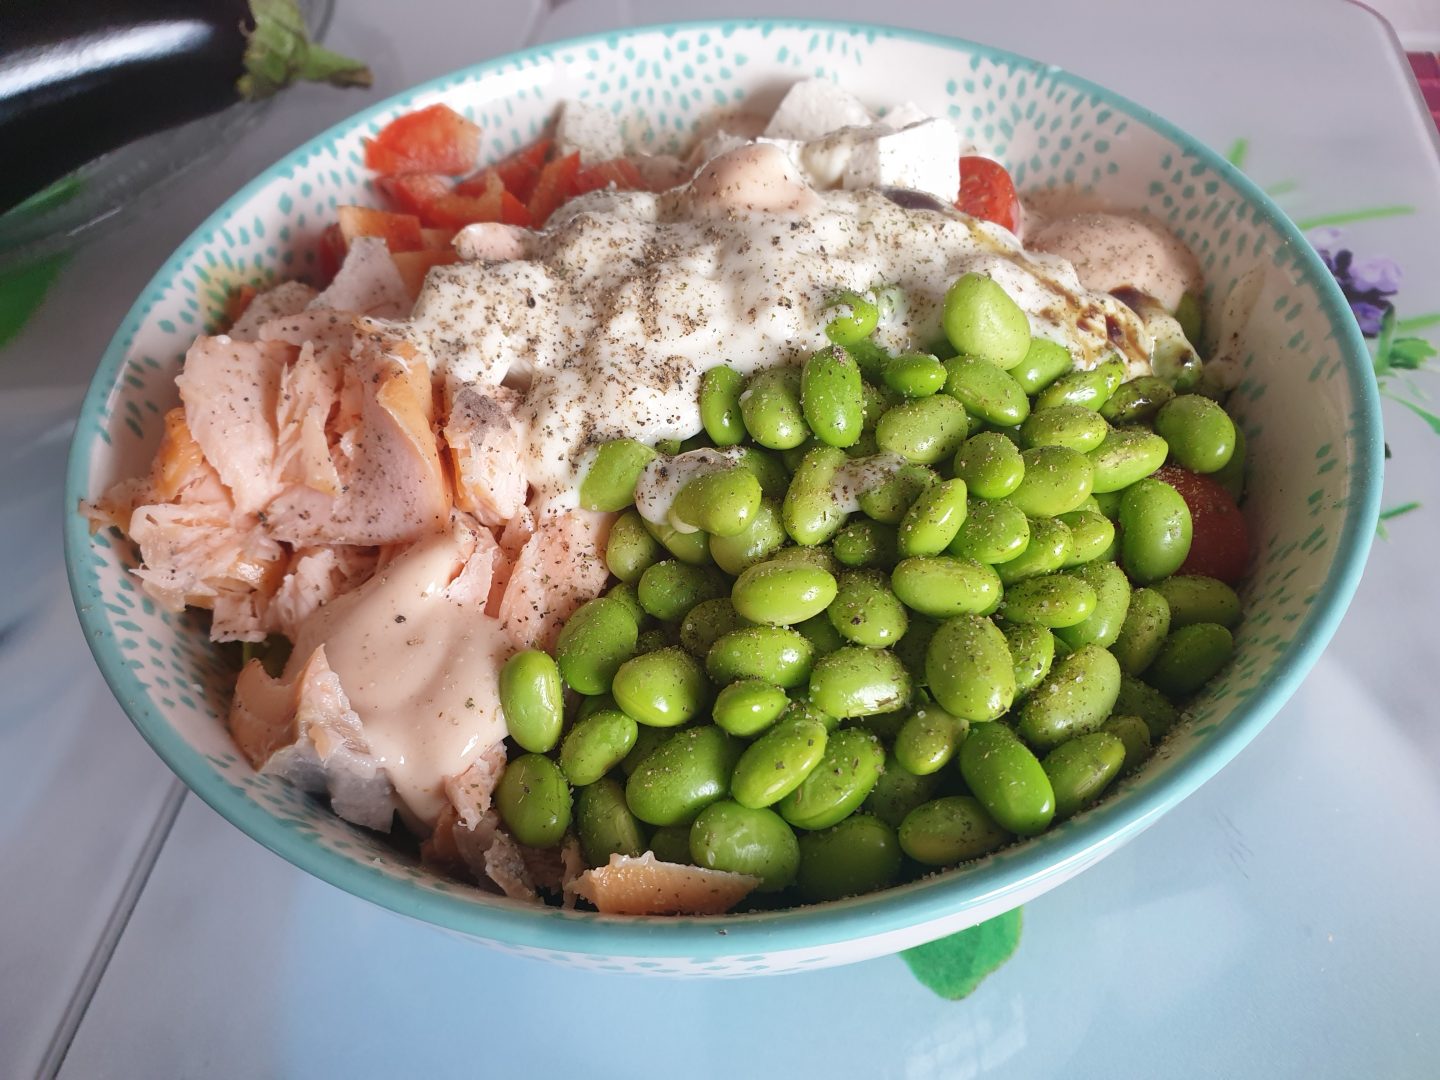 Und hier sind sie: Meine 10 Praxis Tipps mehr und öfter vegetarisch zu essen. Auf dem Foto siehst Du einen Bowl mit Gemüse, Edamame und geräuchertem Lachs, also ein pescetarischer Bowl. 